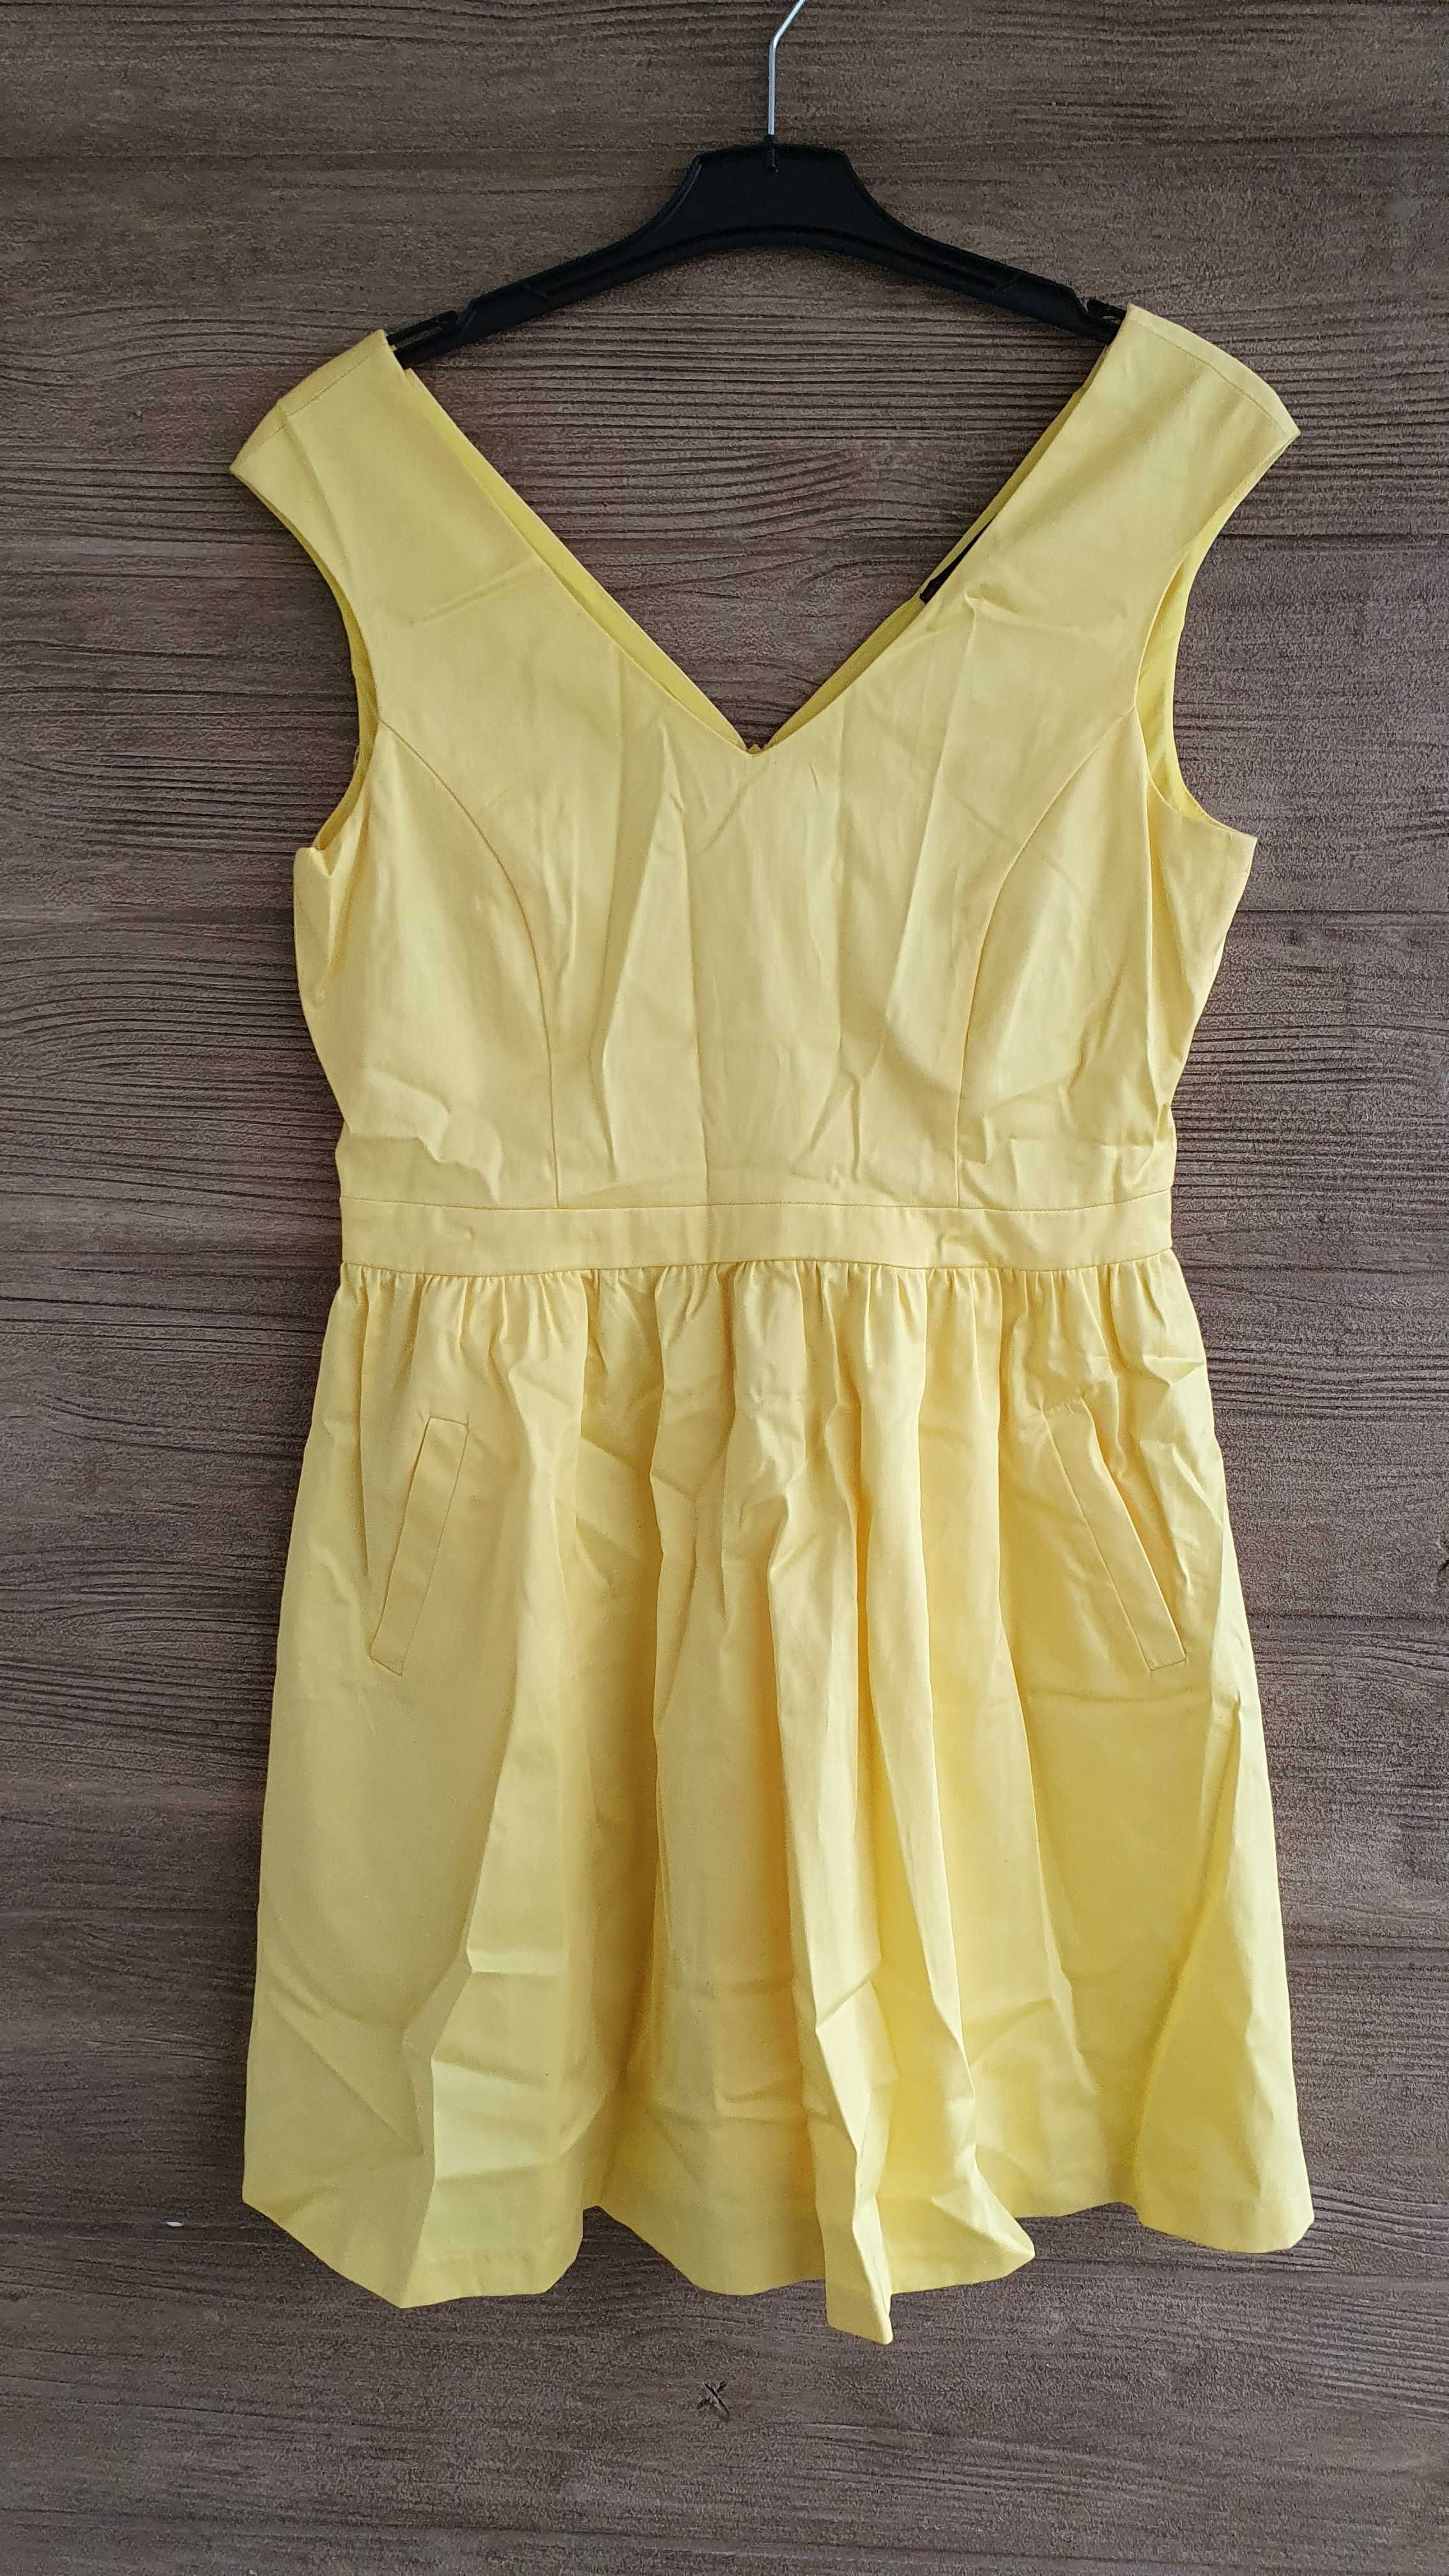 Kopertowa żółta bez rękawów sukienka letnia falbanki Zara L